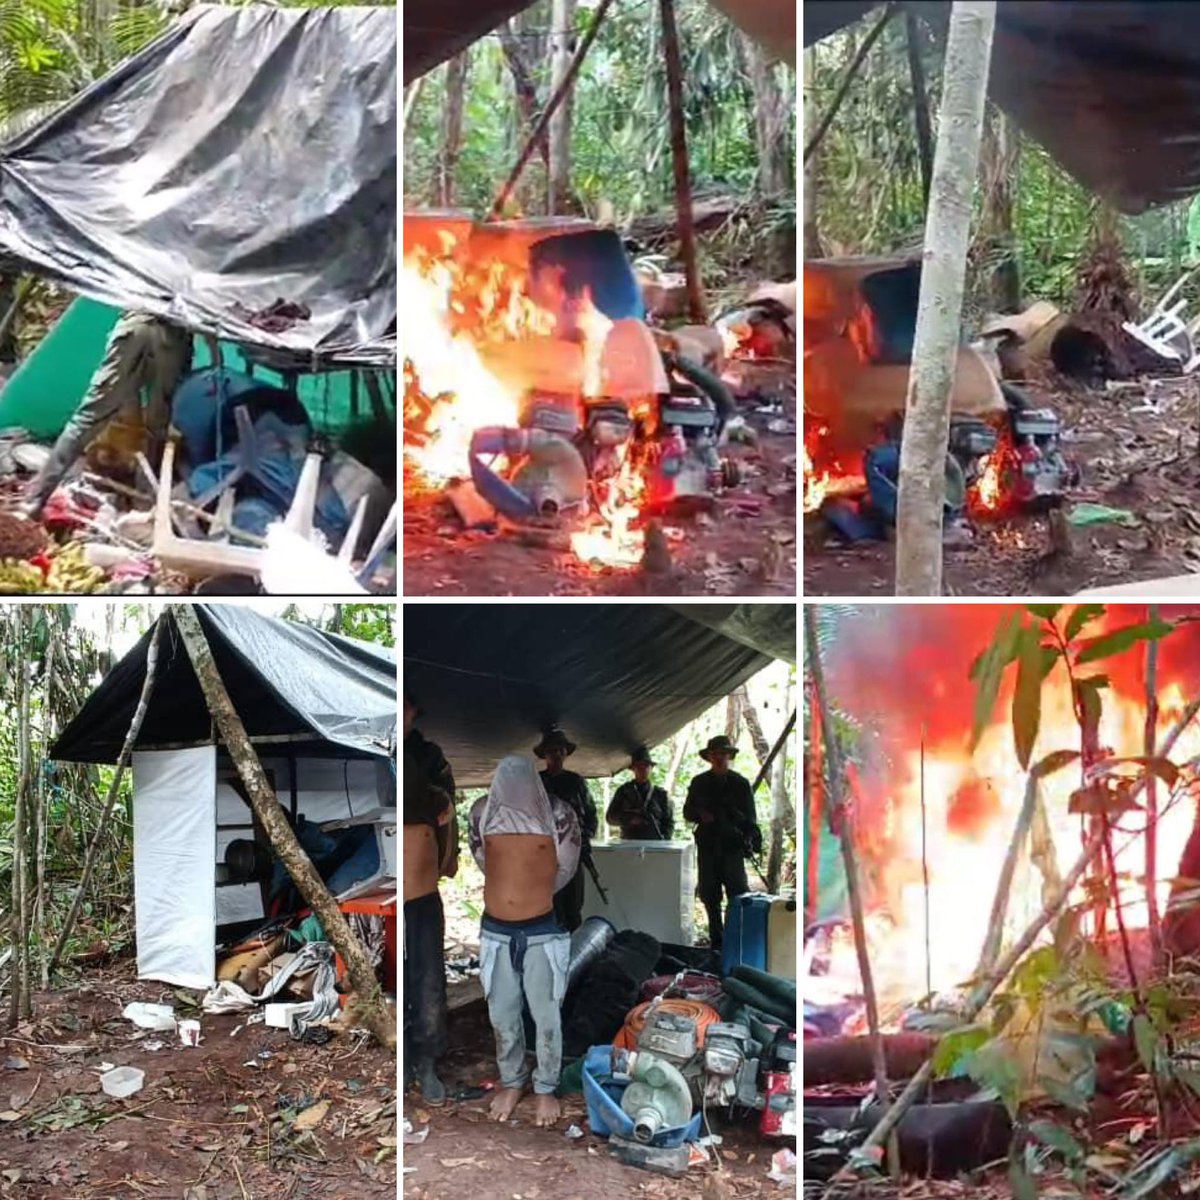 #Gobierno || Desmantelan campamento de minería ilegal en Cerro Yapacana de Amazonas La Fanb, “en operaciones de patrullaje terrestre y escudriñamiento localizó, desmanteló y destruyó una estructura clandestina para la minería ilegal', dijo el Jefe del Ceofanb.